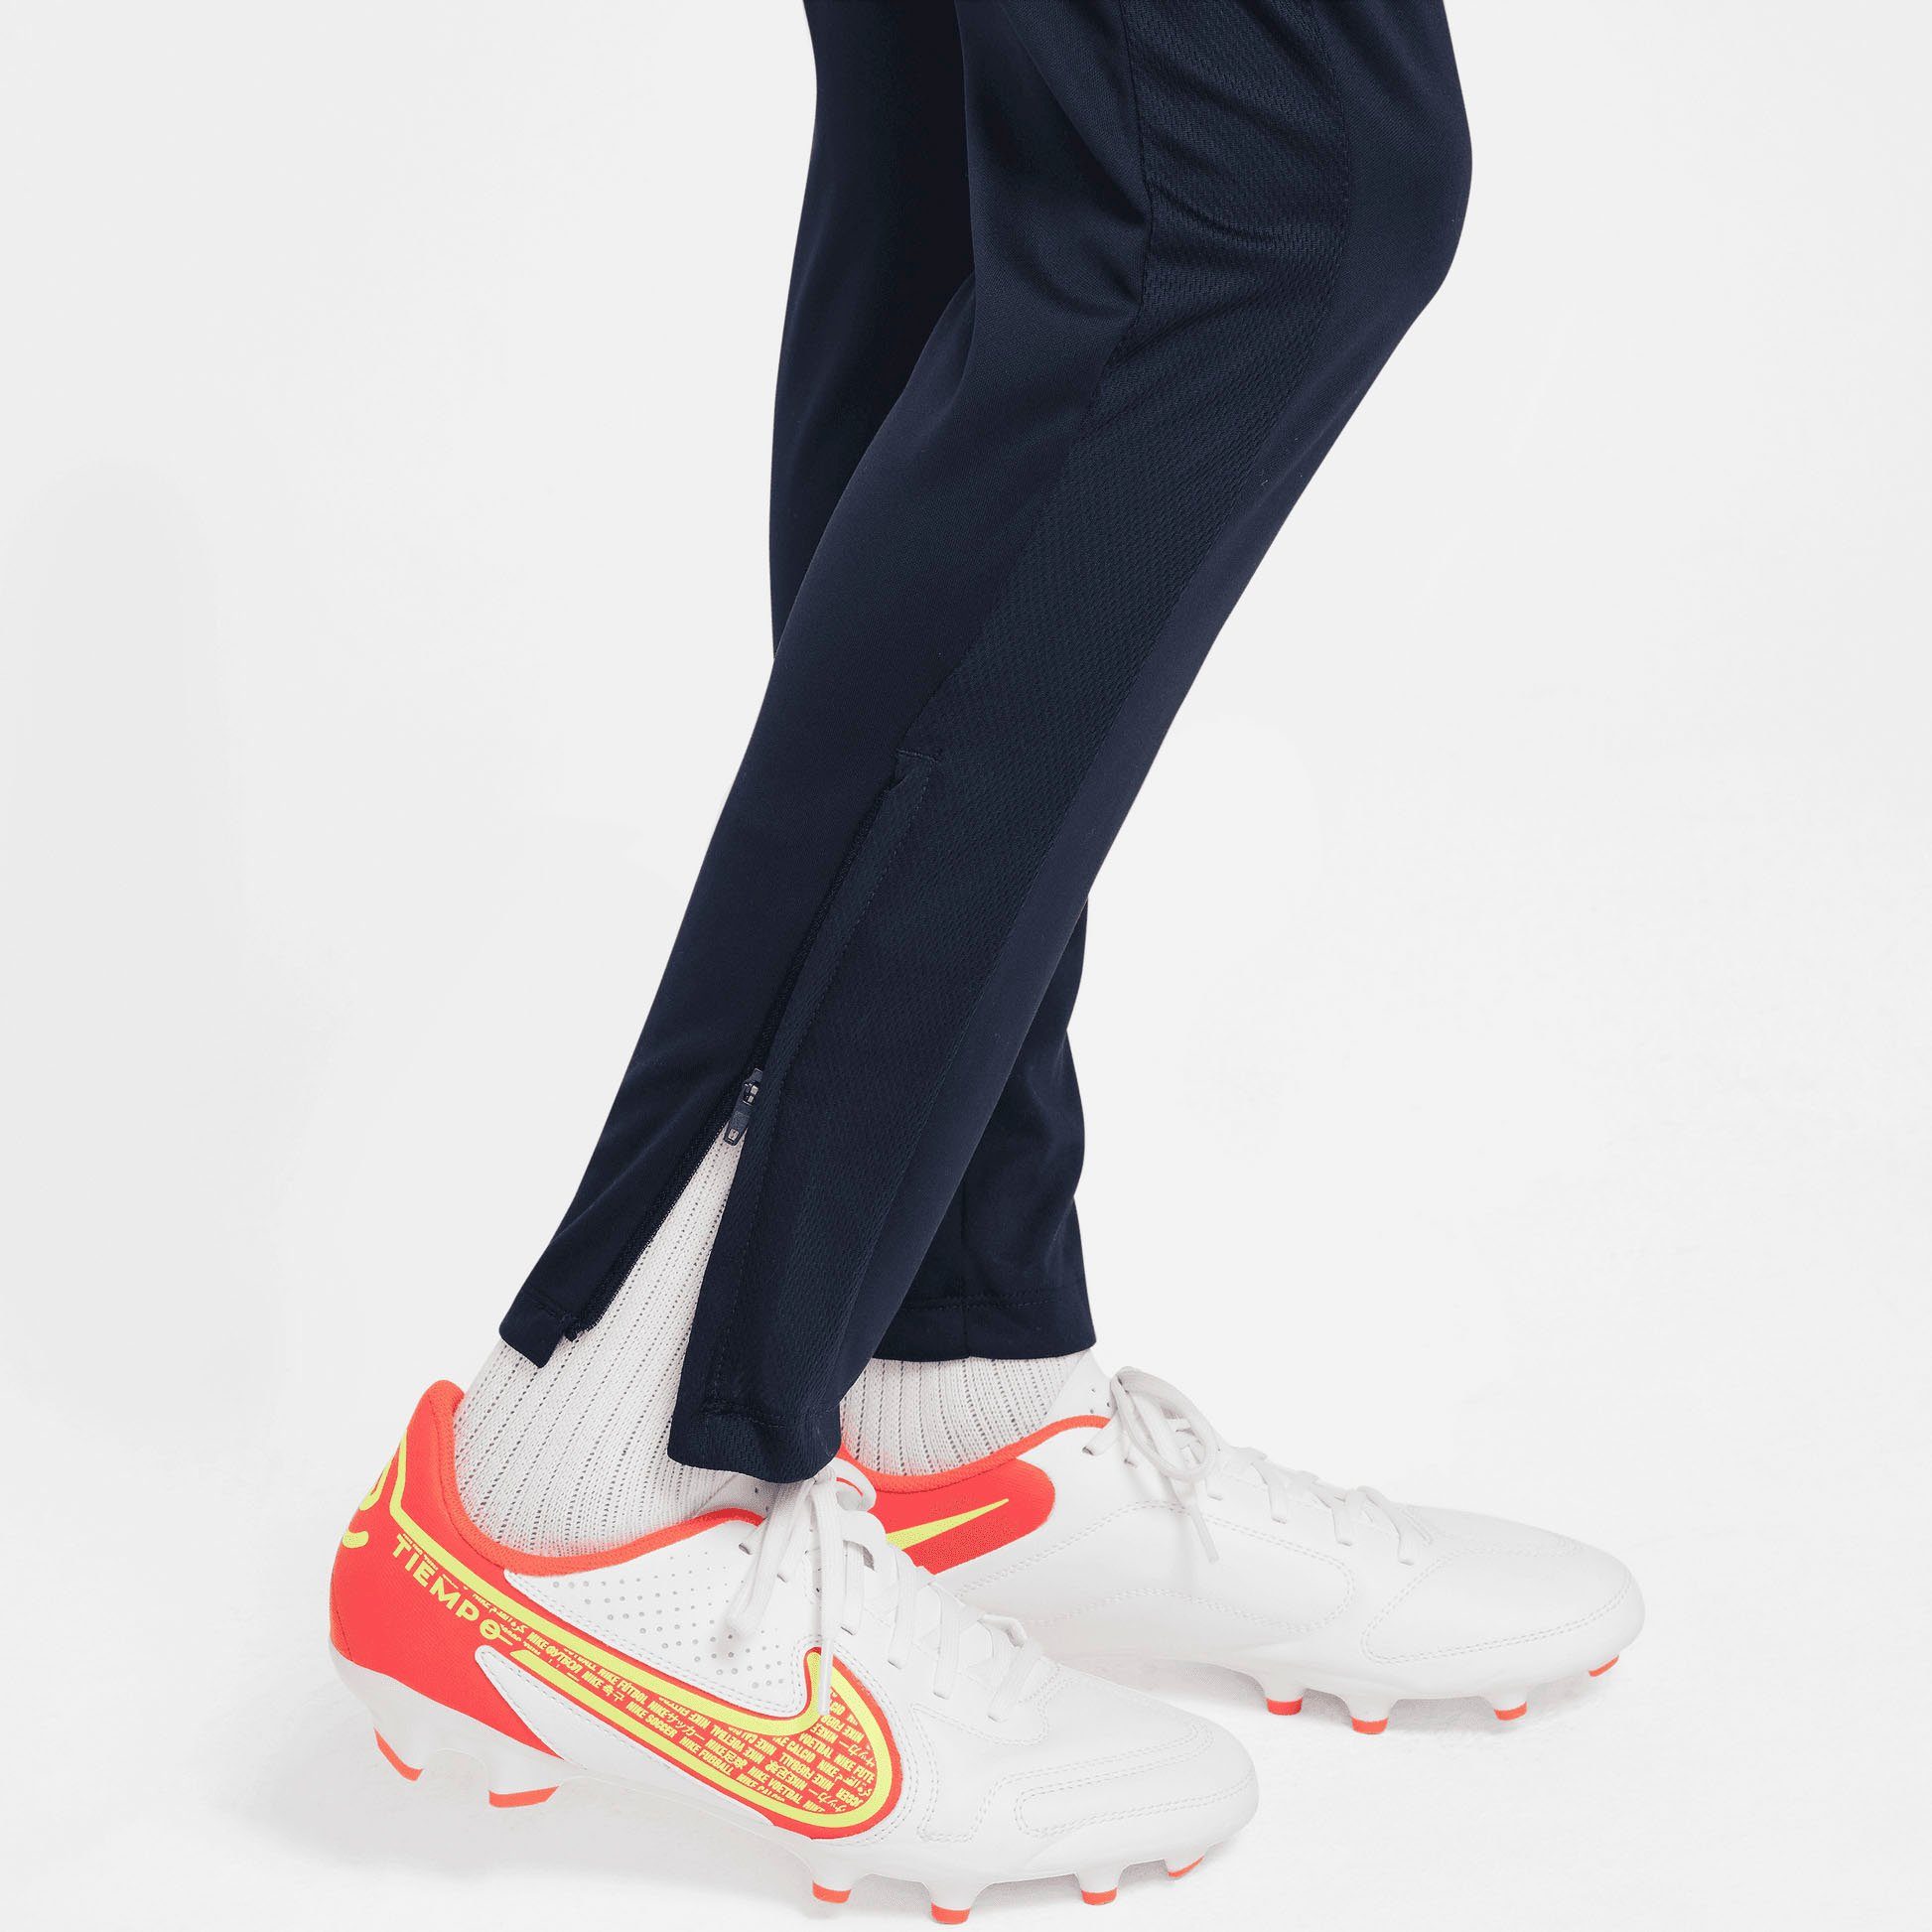 Trainingshose KPZ DF K PANT Nike - für NK BR OBSIDIAN/OBSIDIAN/OBSIDIAN/WHITE Kinder ACD